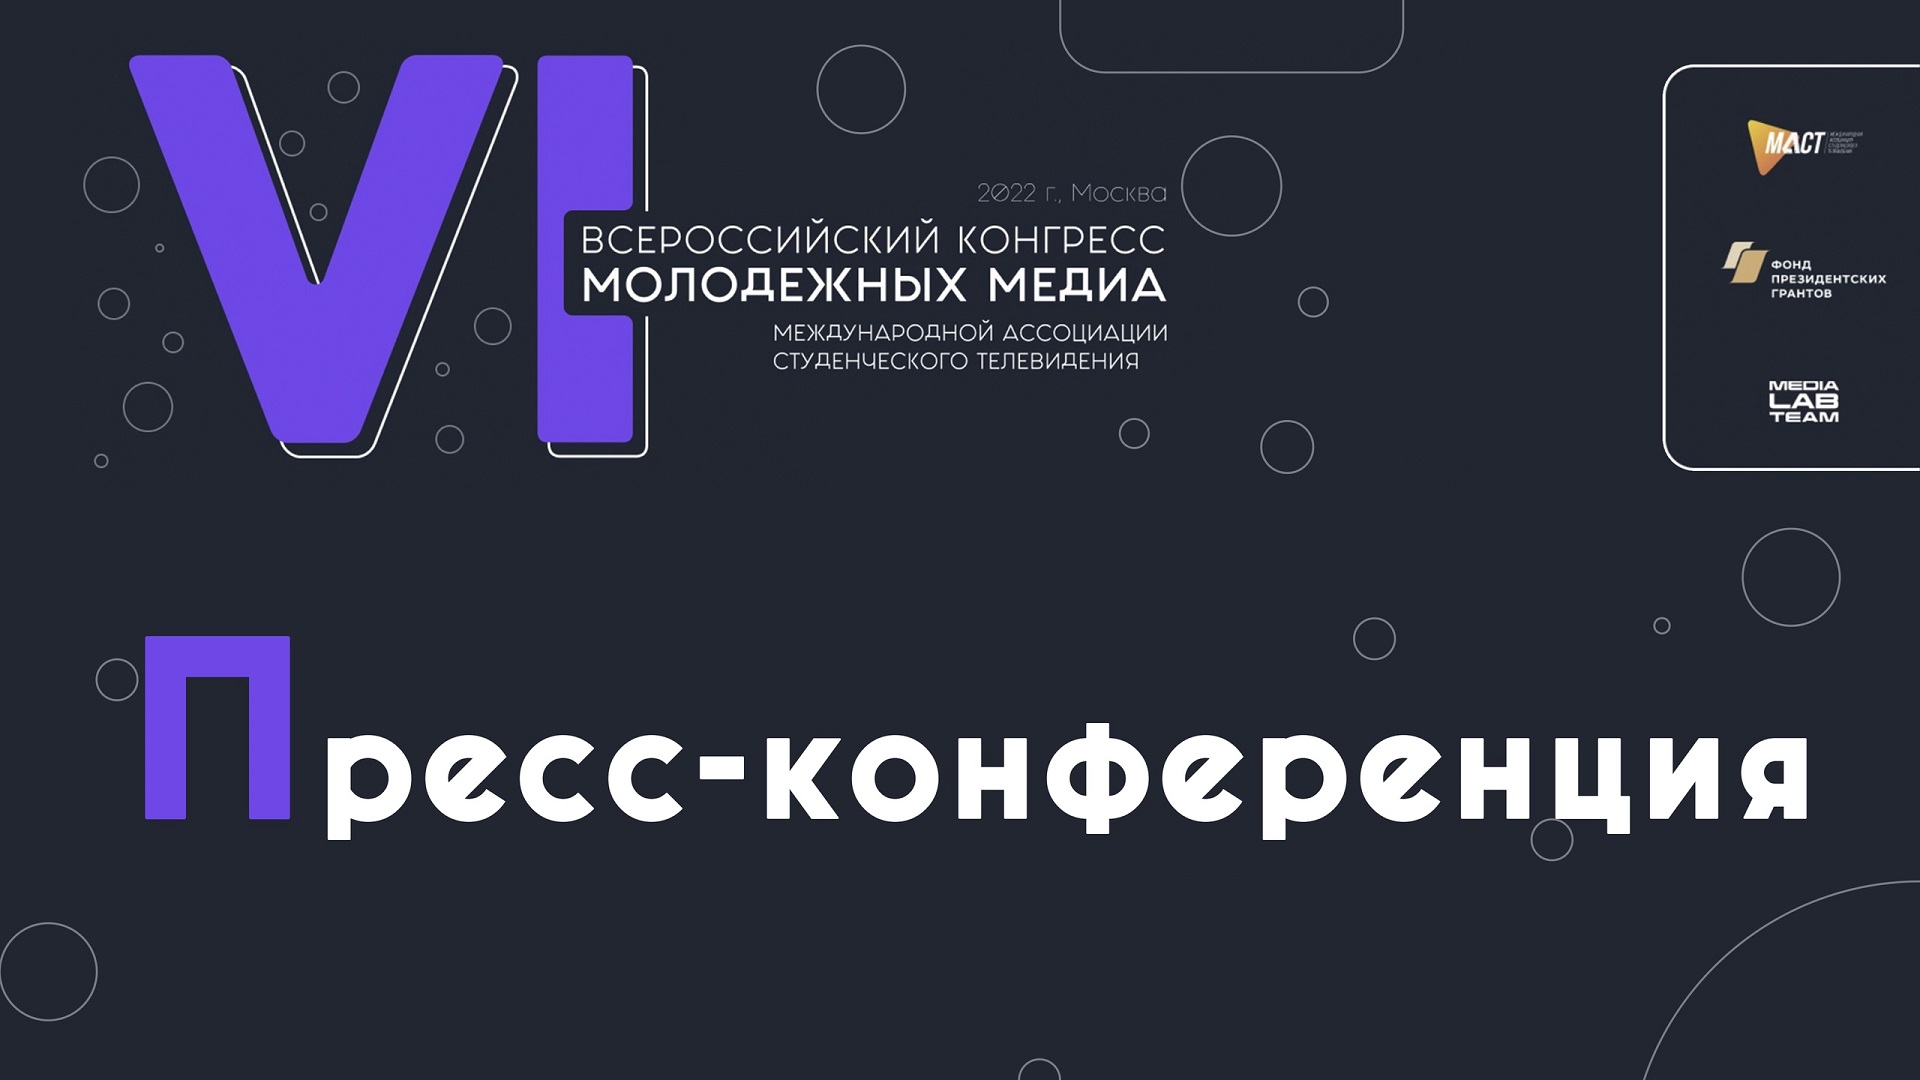 1 декабря в пресс-центре МИА «Россия сегодня» пройдёт пресс-конференция, посвящённая VI Всероссийскому конгрессу молодёжных медиа